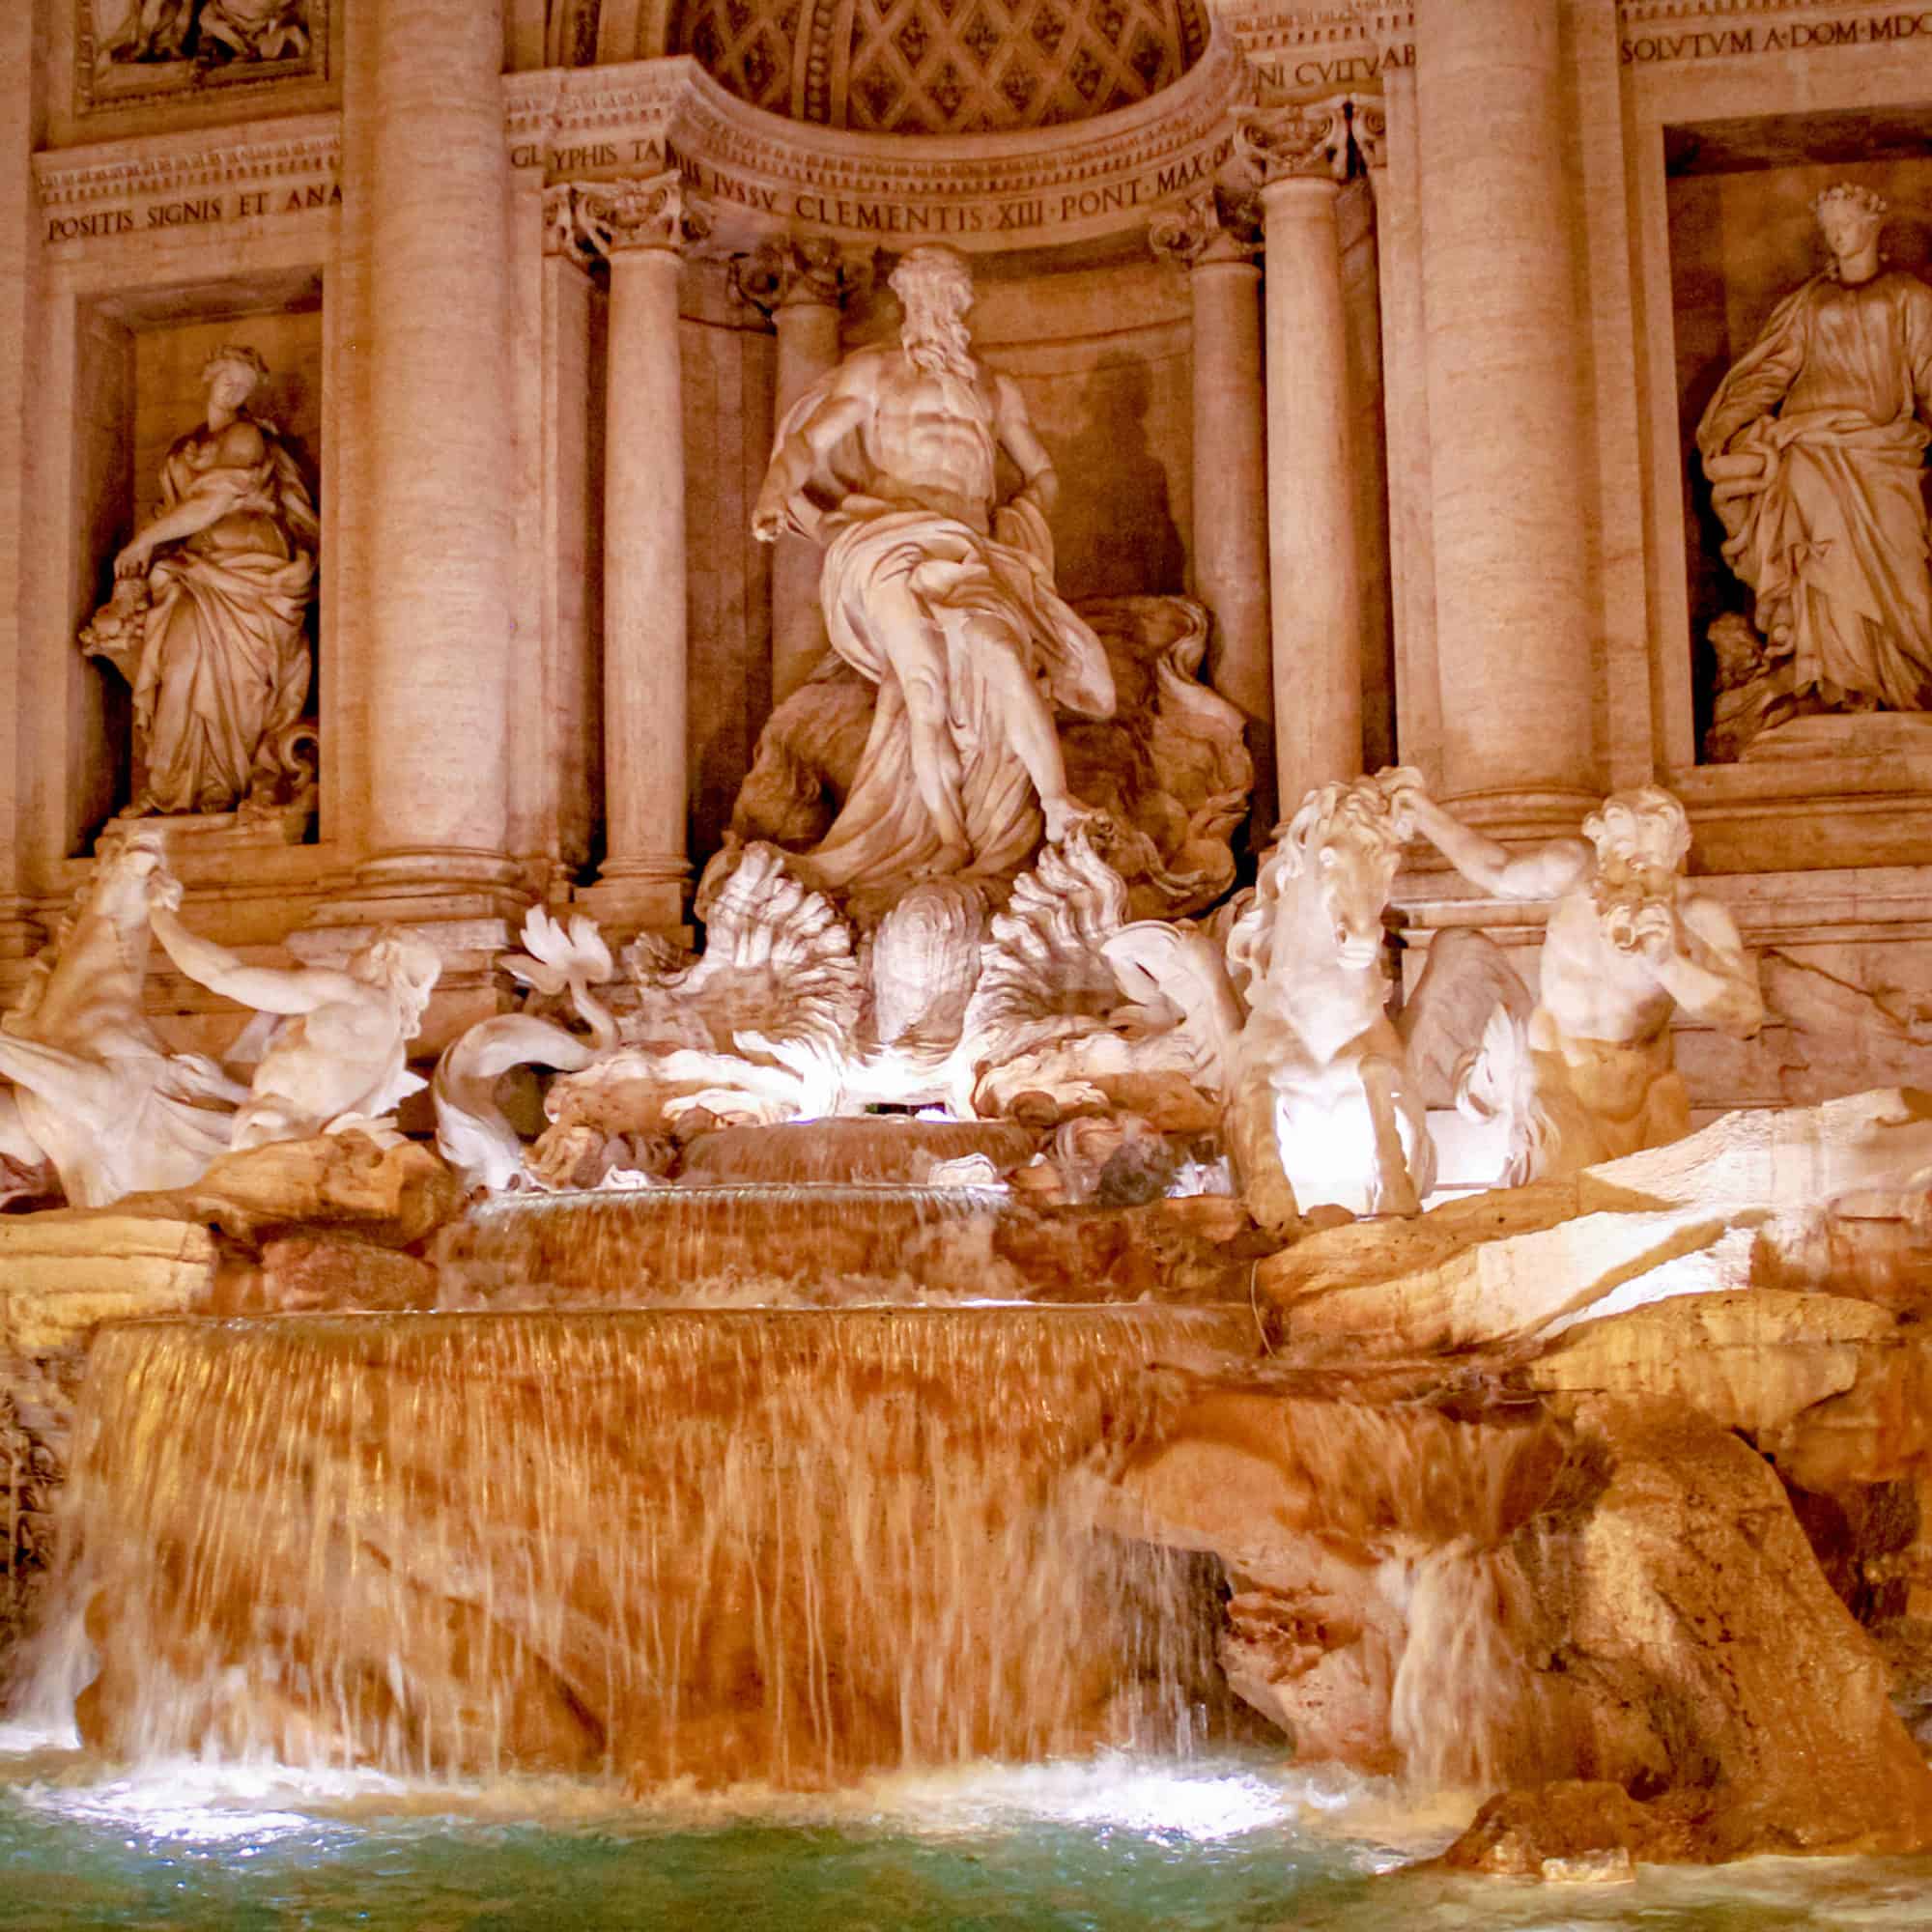 Italy - Rome- Trevi Fountain